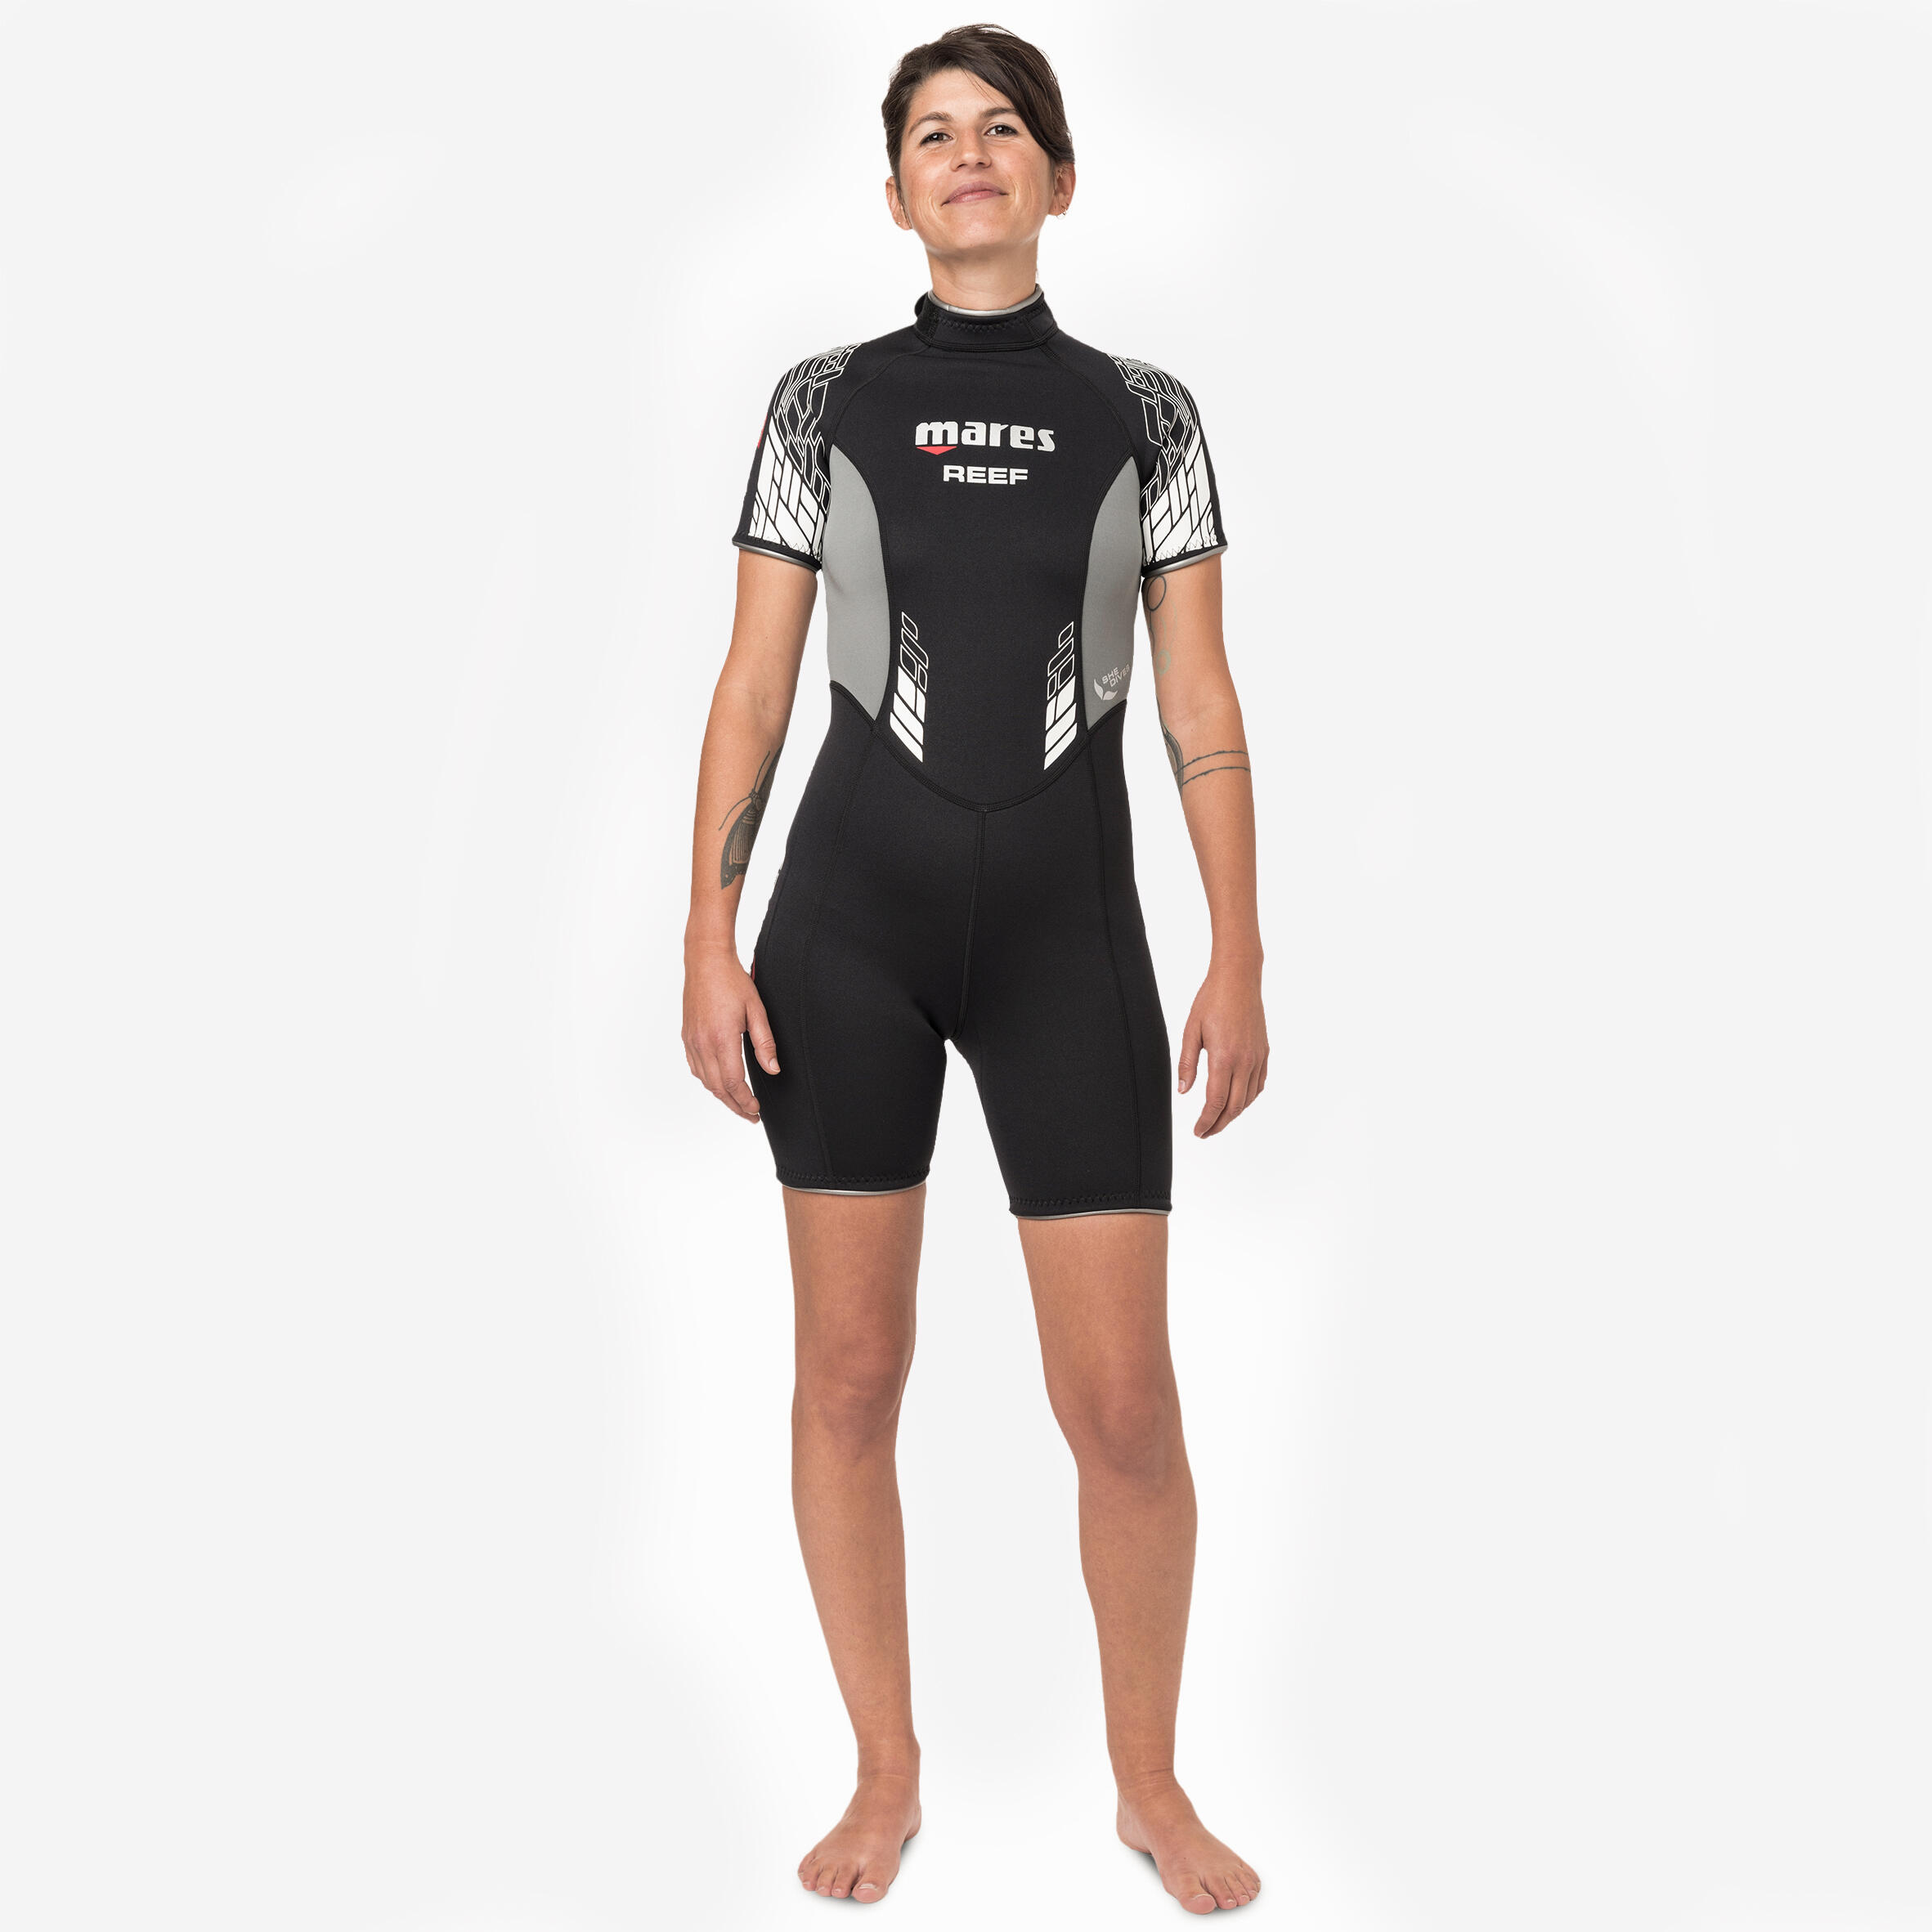 Decathlon | Muta subacquea donna REEF 2,5 mm nero-grigio |  Mares